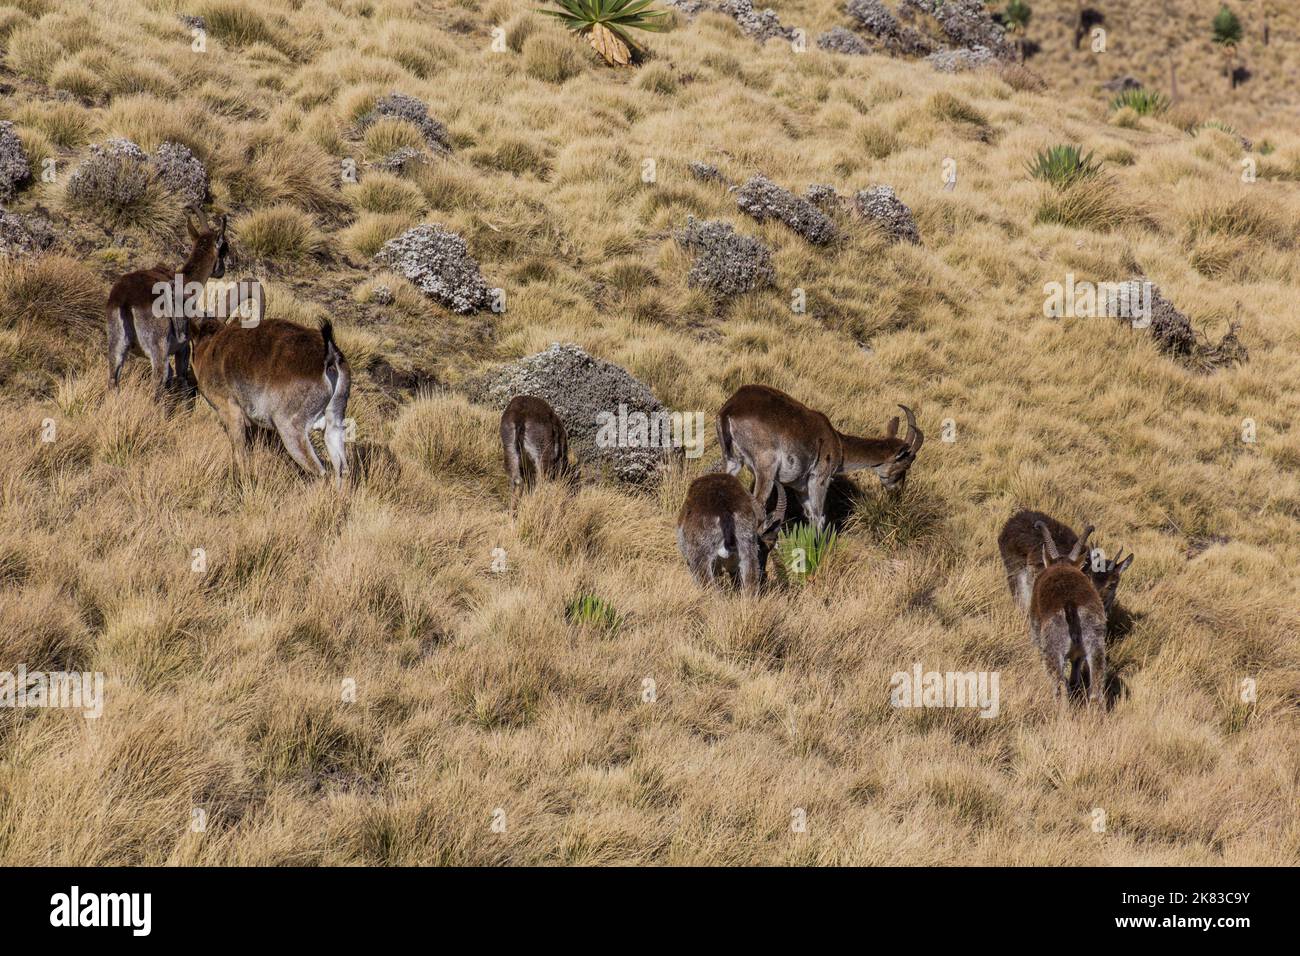 Walia ibexes (Capra walie) in Simien mountains, Ethiopia Stock Photo